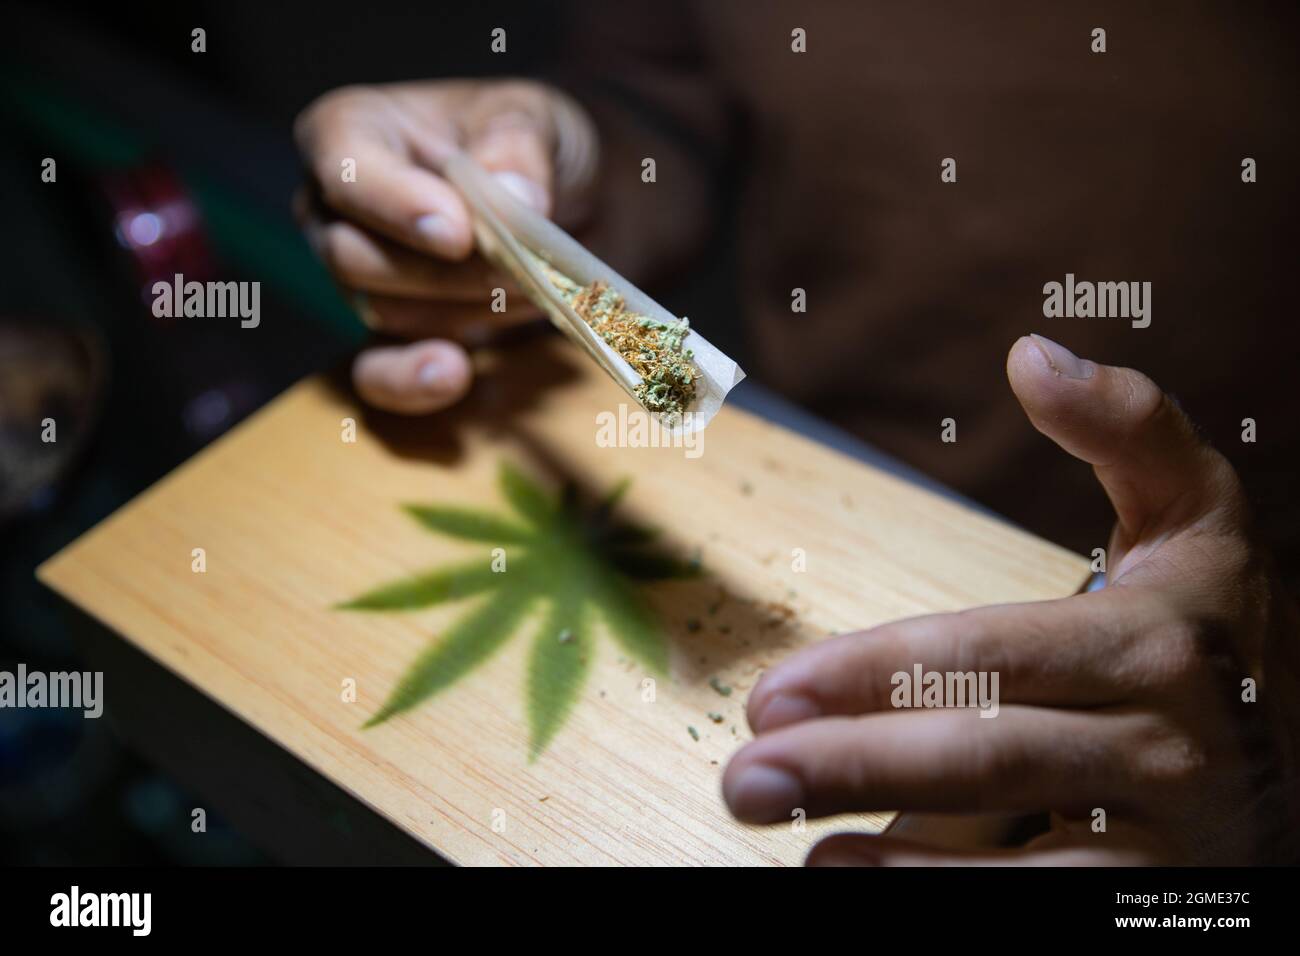 Primo piano delle mani di un ragazzo che sta rotolando un giunto di marijuana. Focus sulla marijuana nella carta rotabile Foto Stock